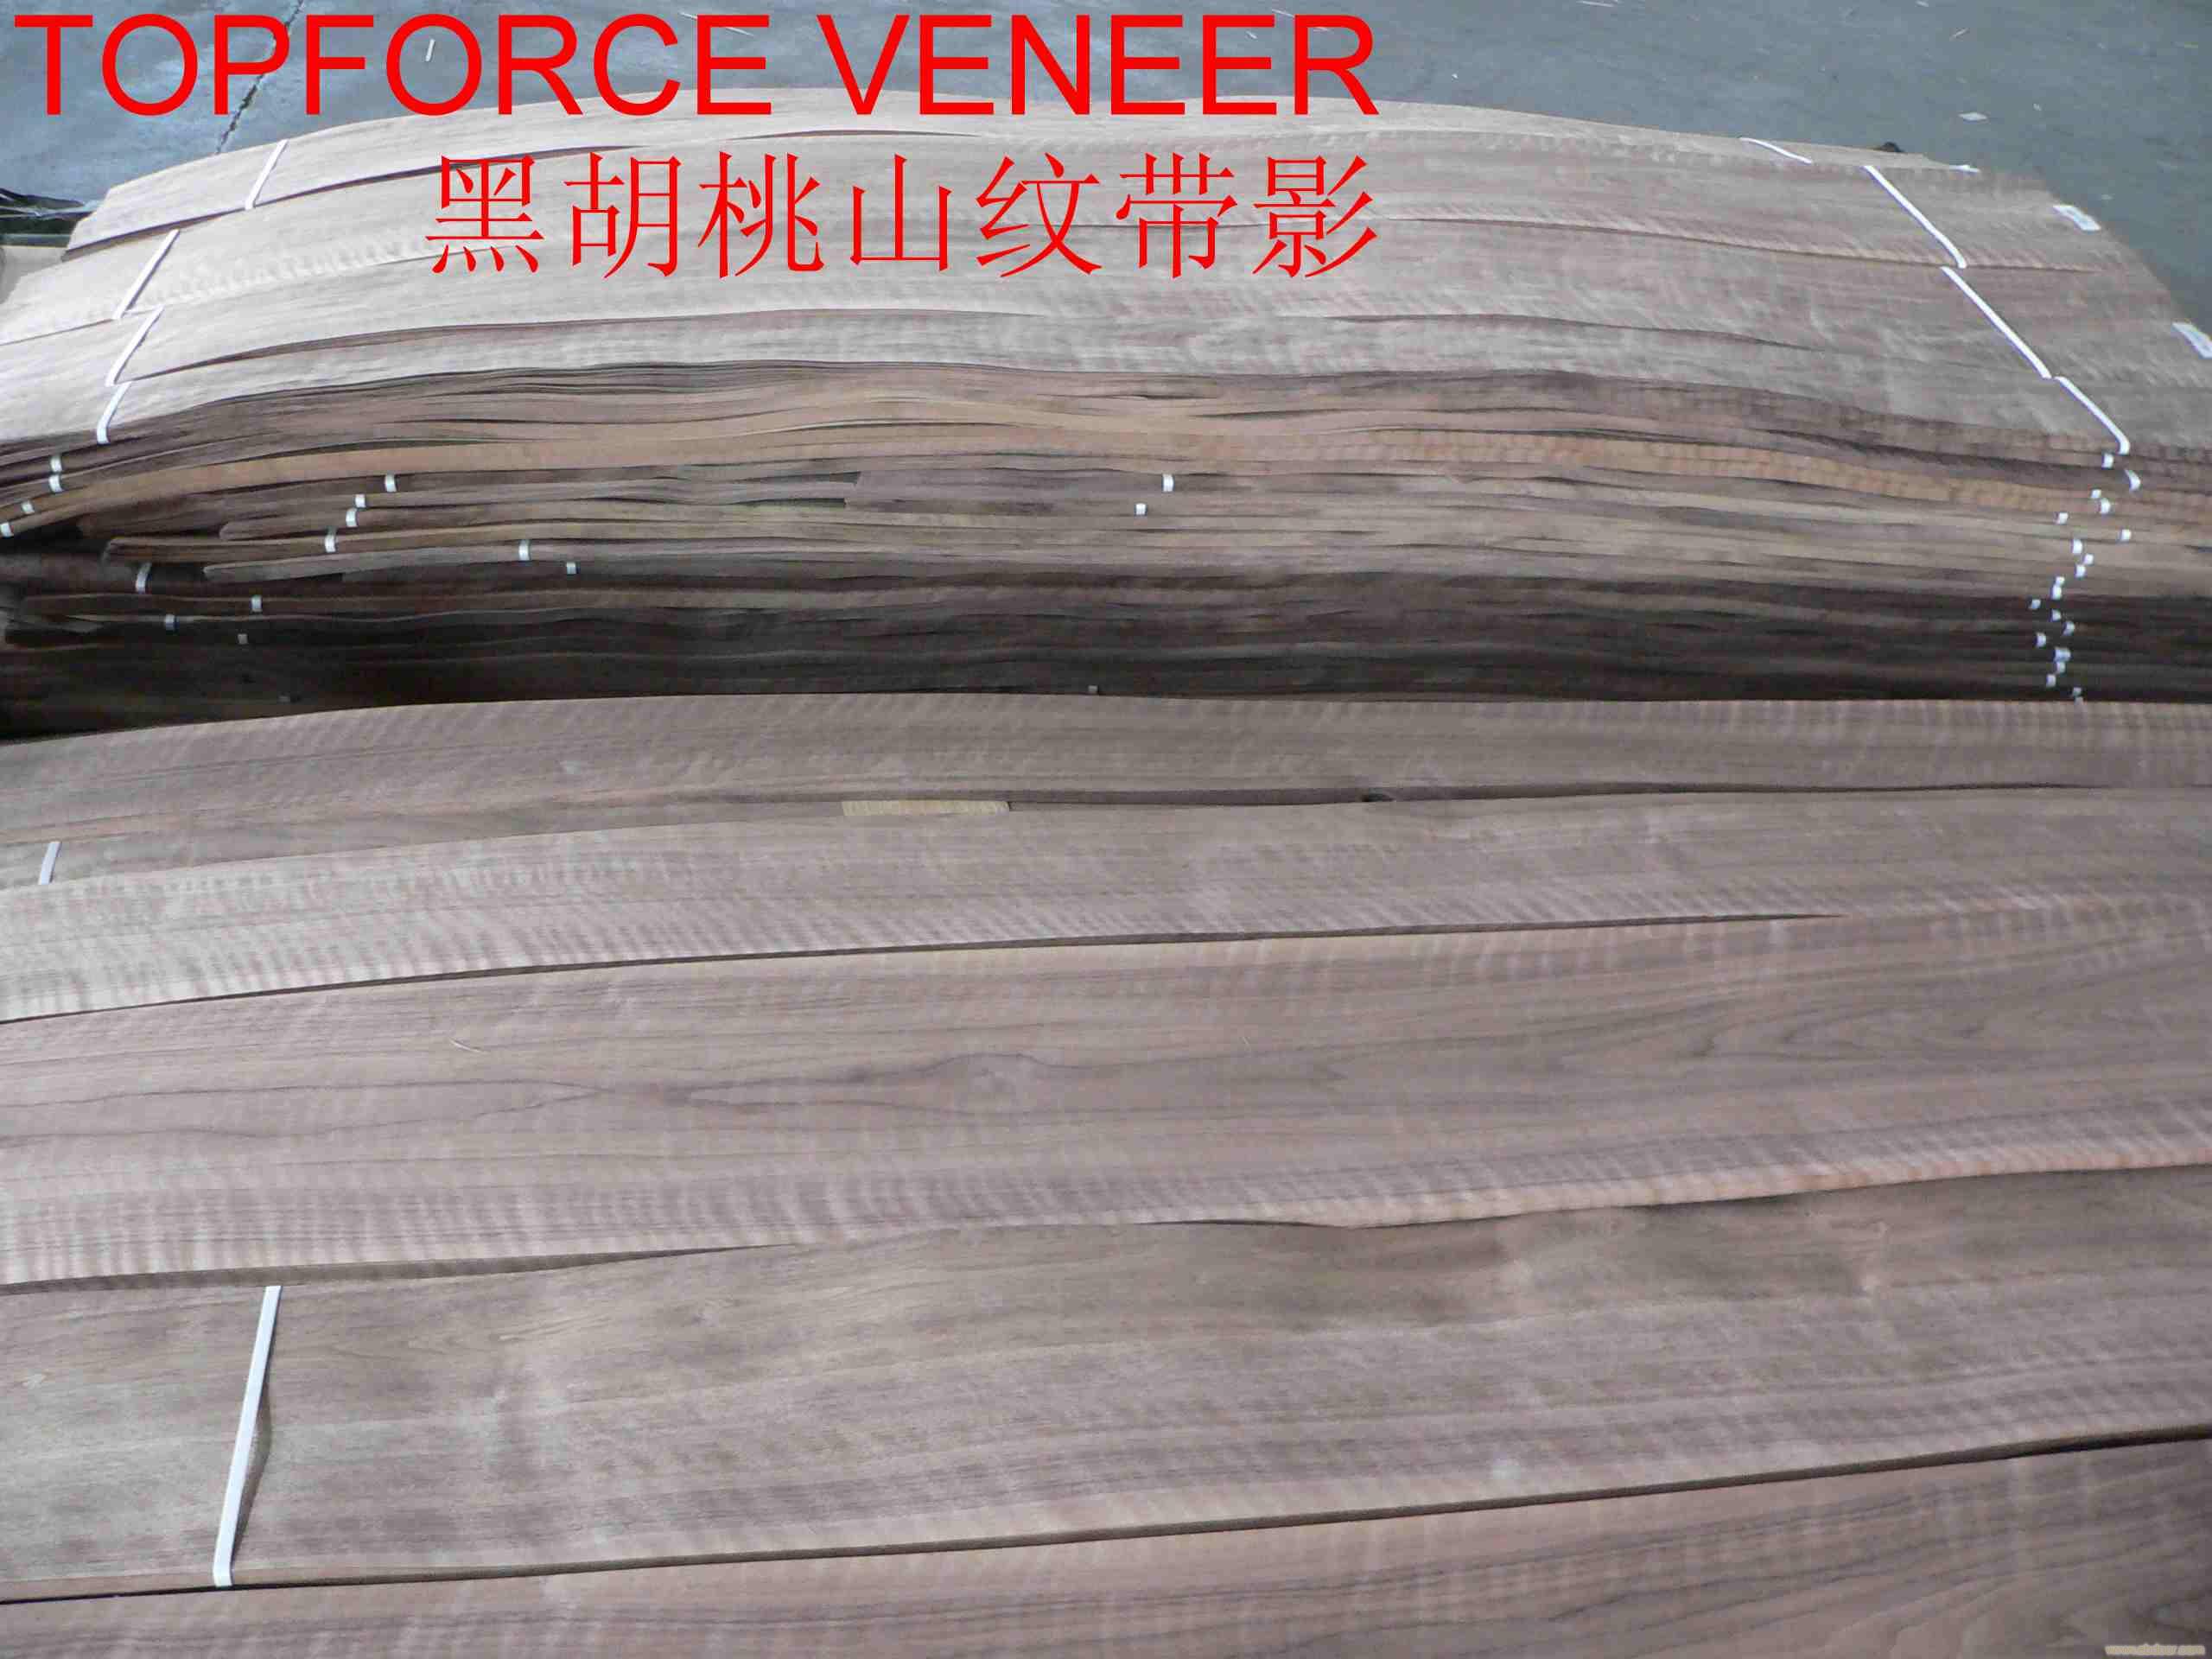 上海黑胡桃强影家具级 China ShangHai Walnut Strong Figure Furniture Grade Veneer